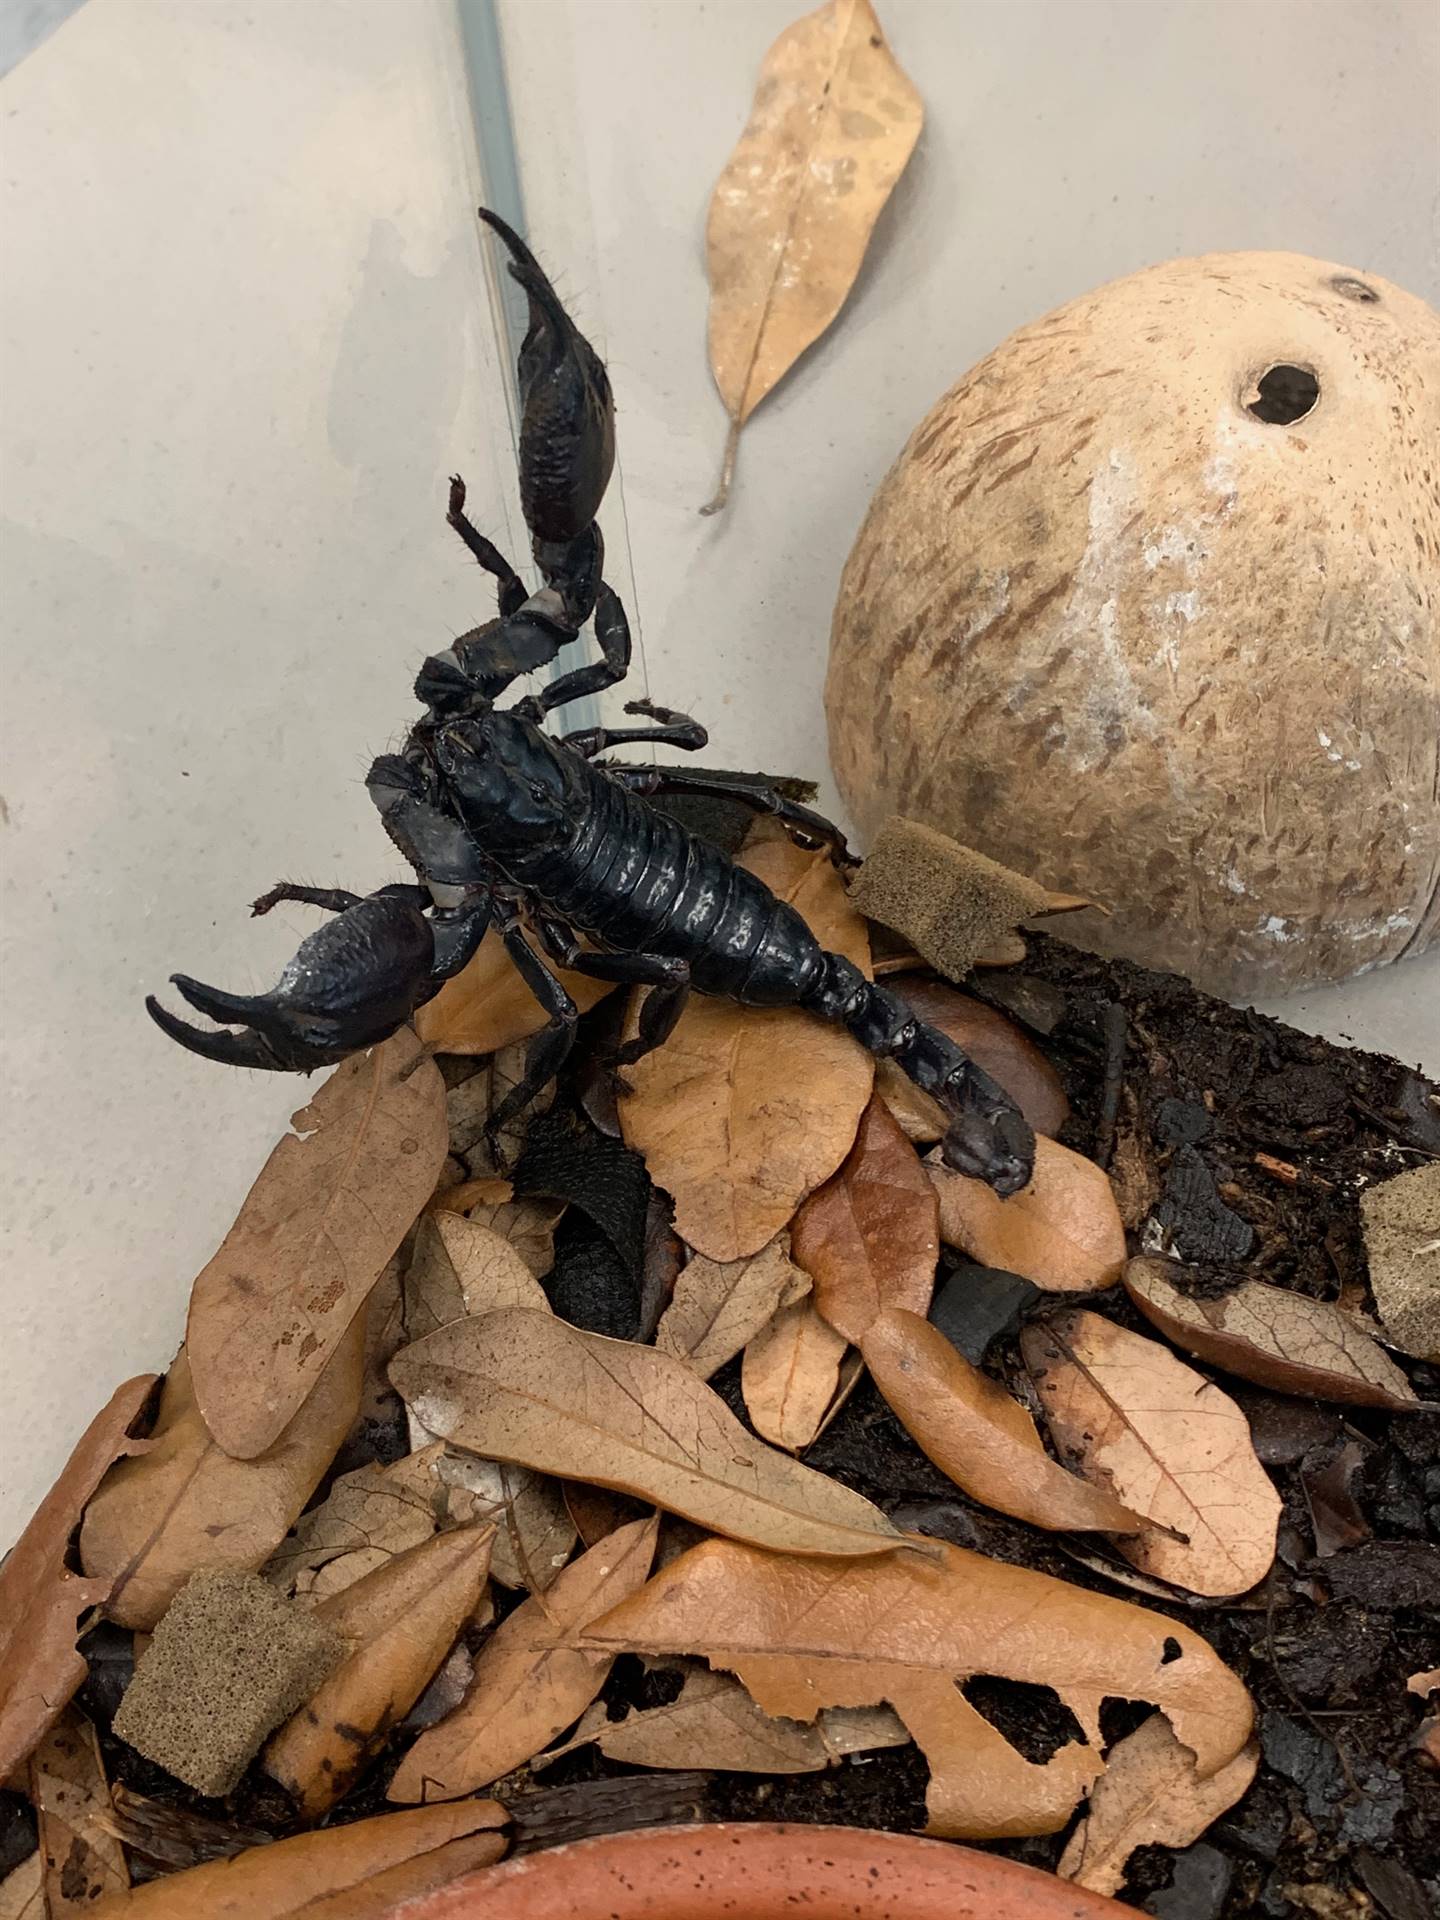  a black scorpion